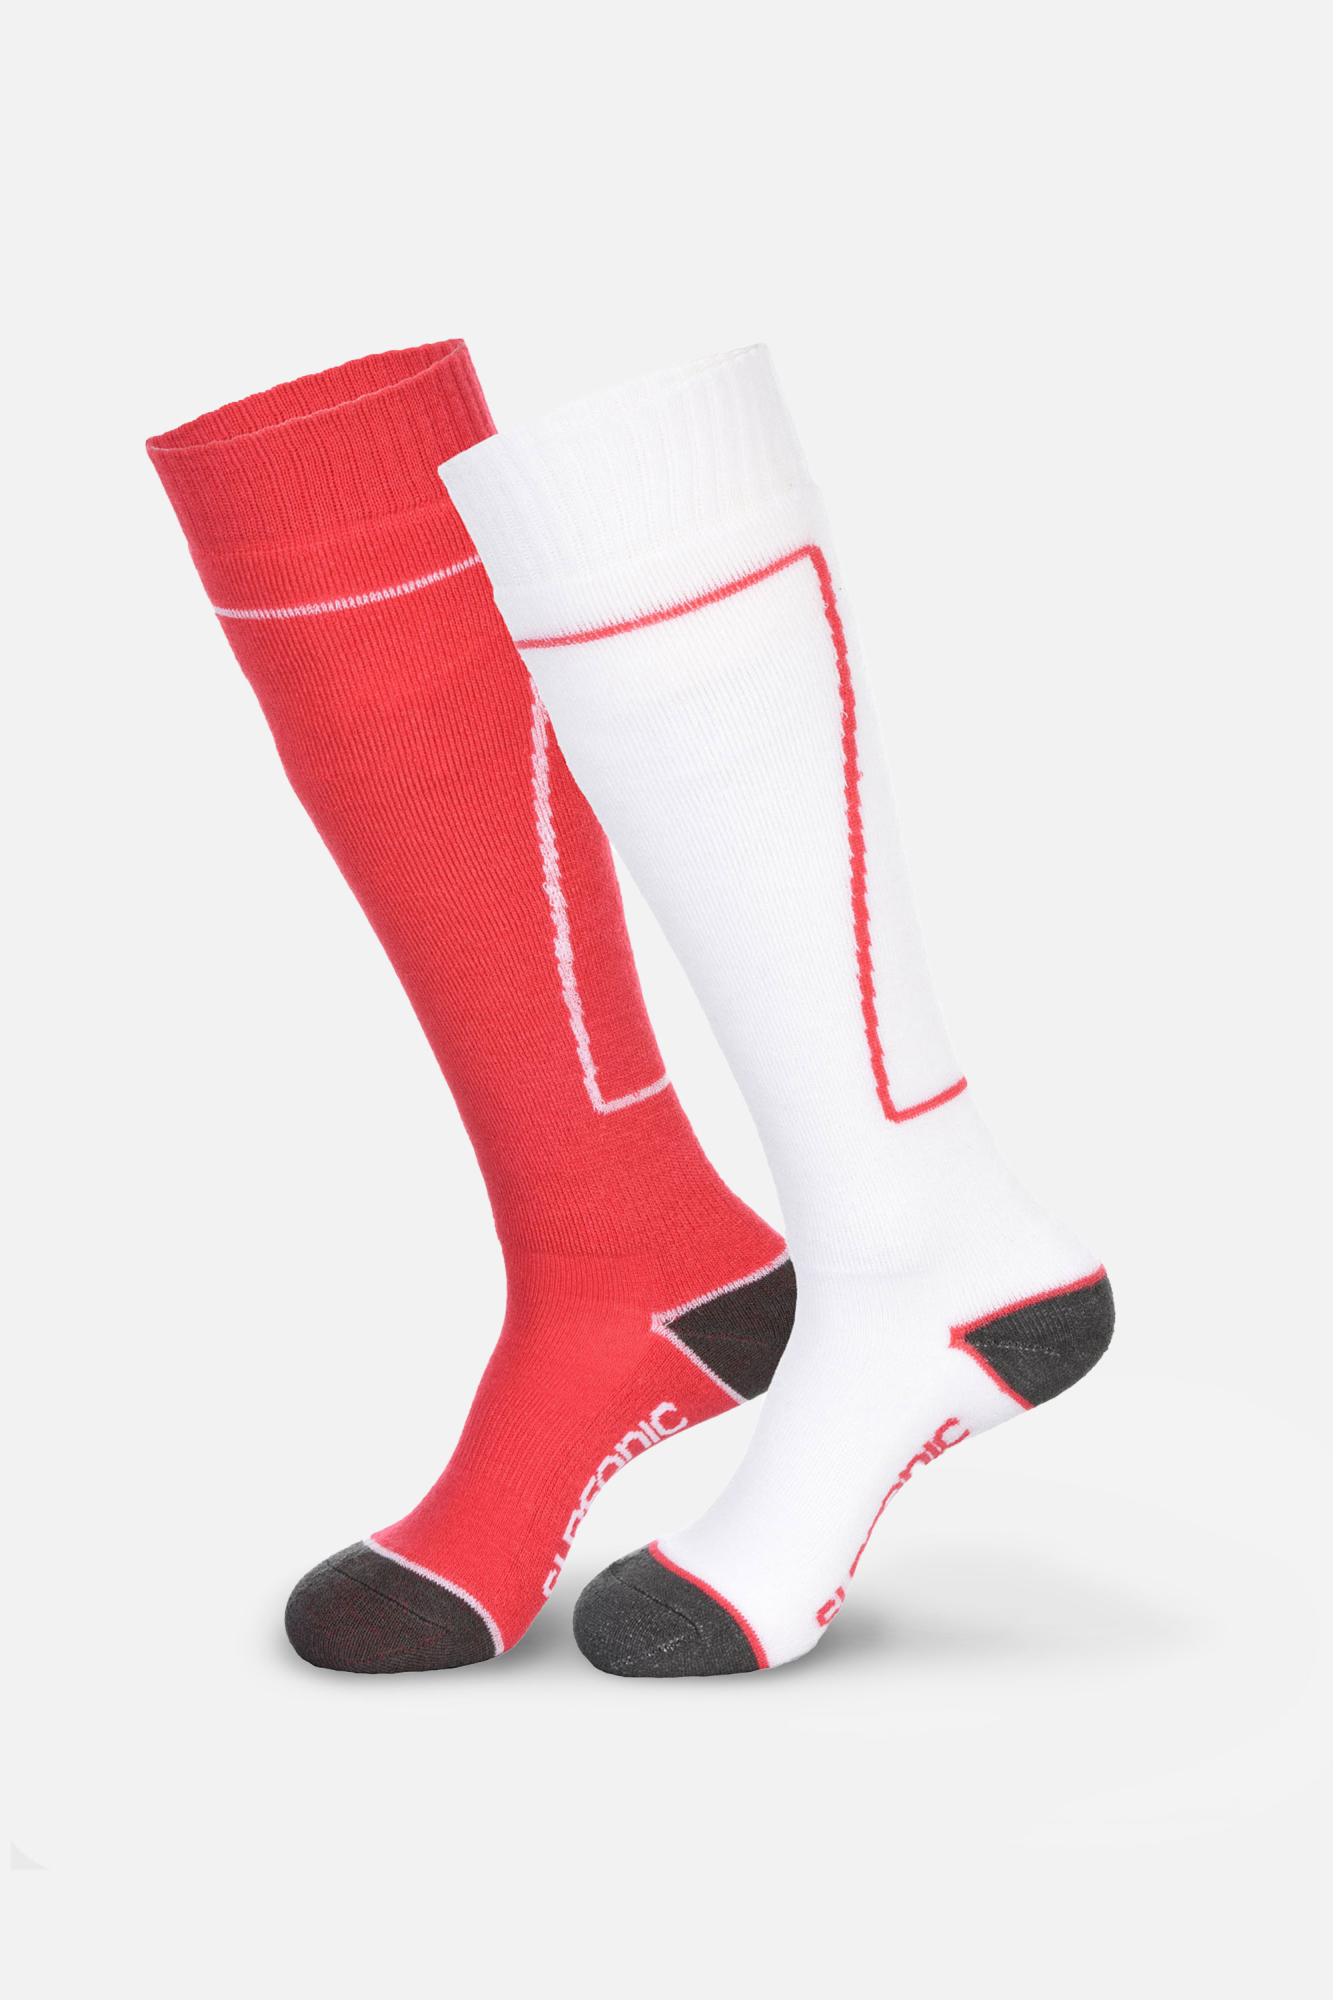 Surfanic Womens Pro 2pk Socks Red - Size: 4-7